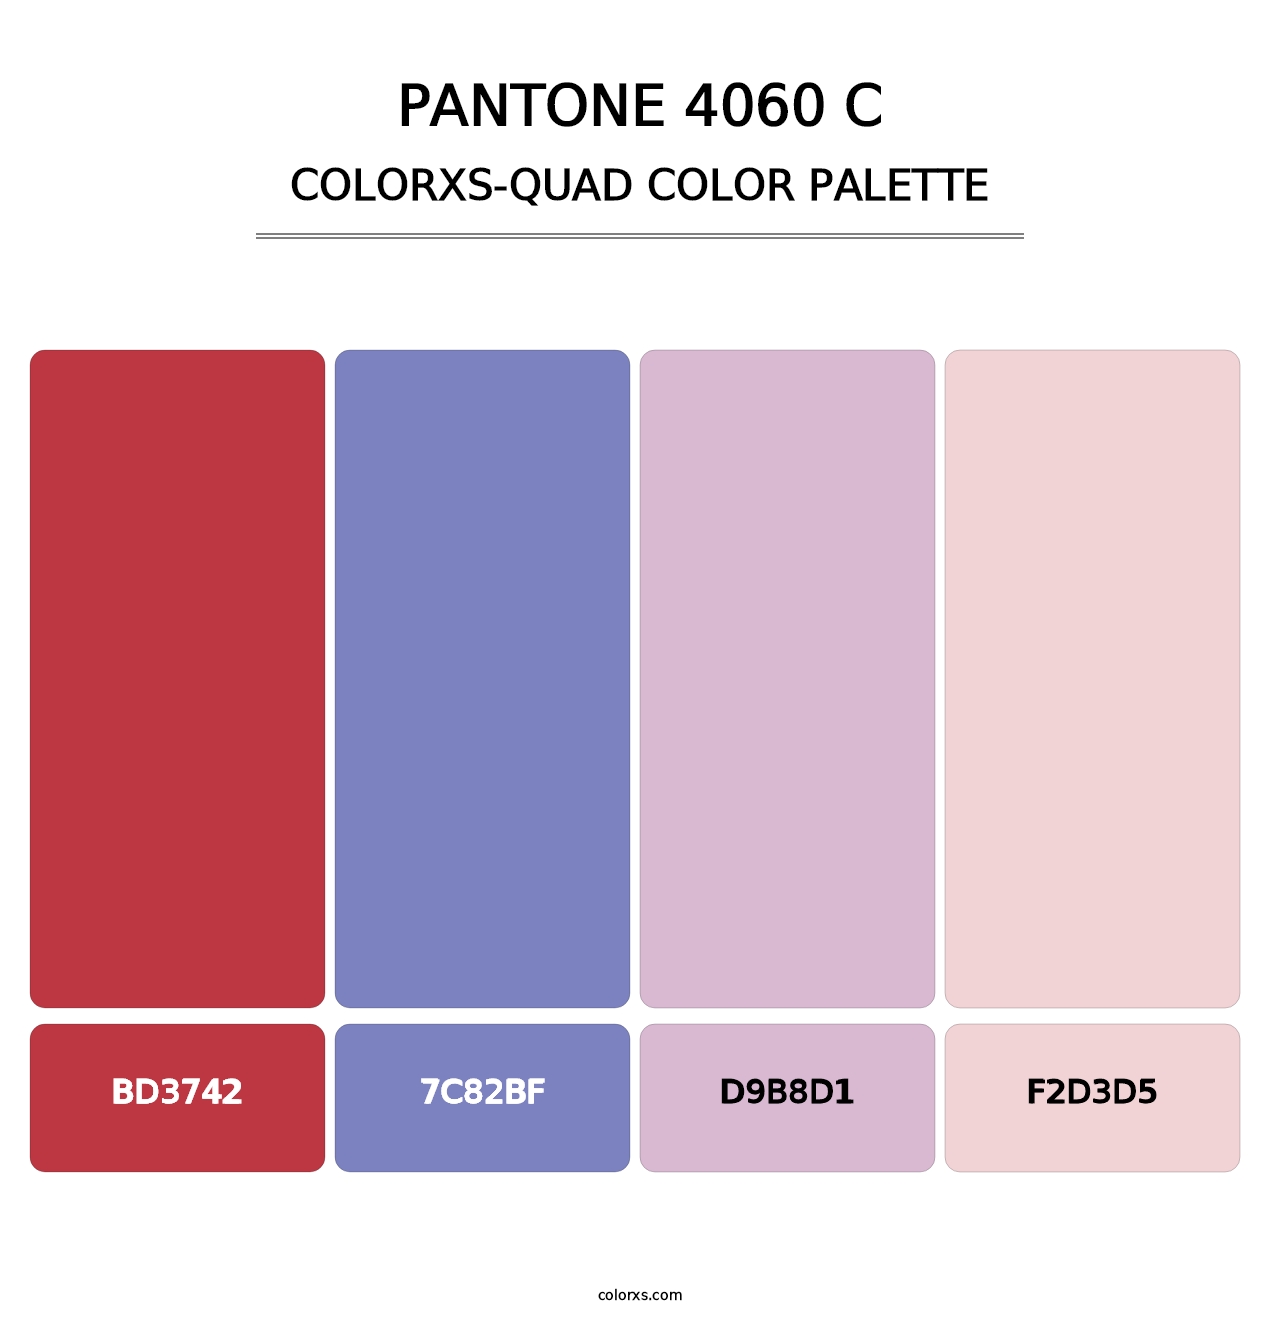 PANTONE 4060 C - Colorxs Quad Palette